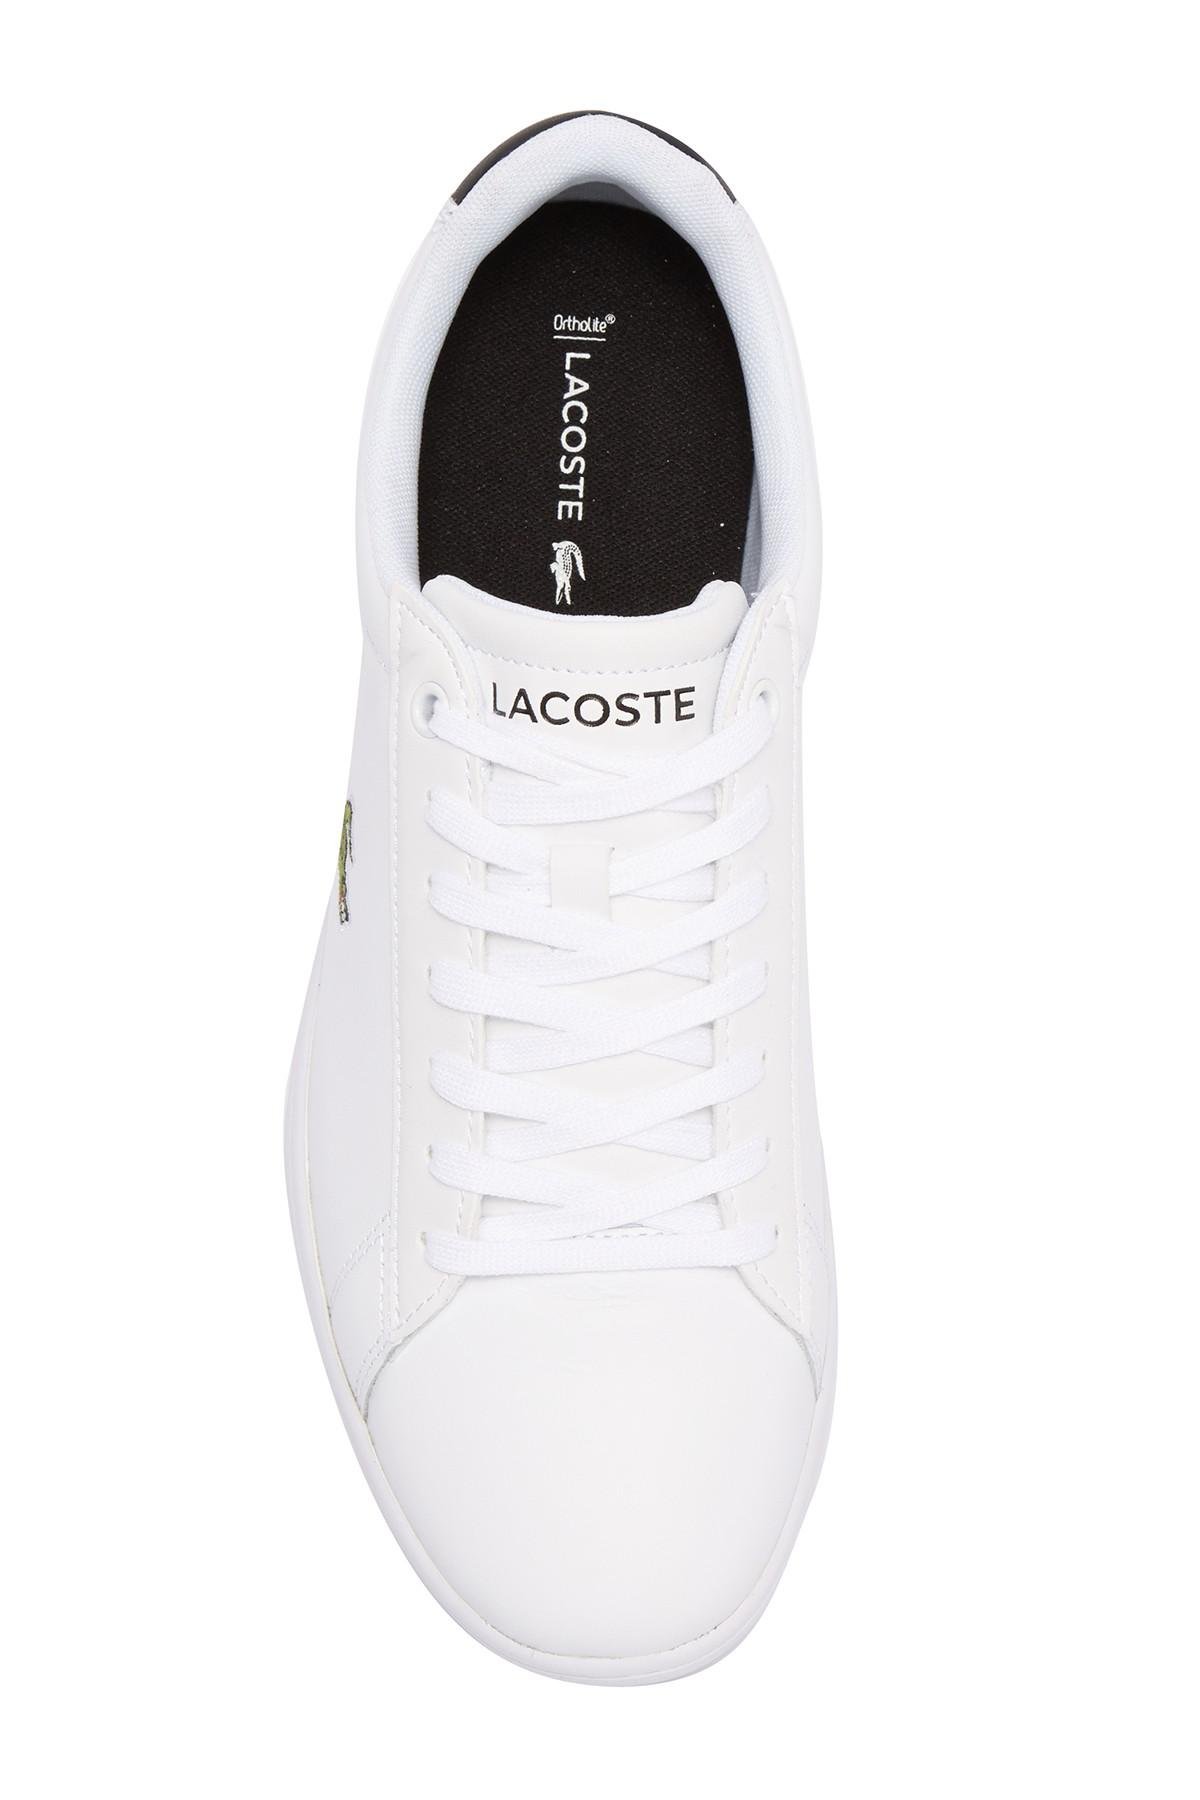 lacoste hydez 318 1 sneaker